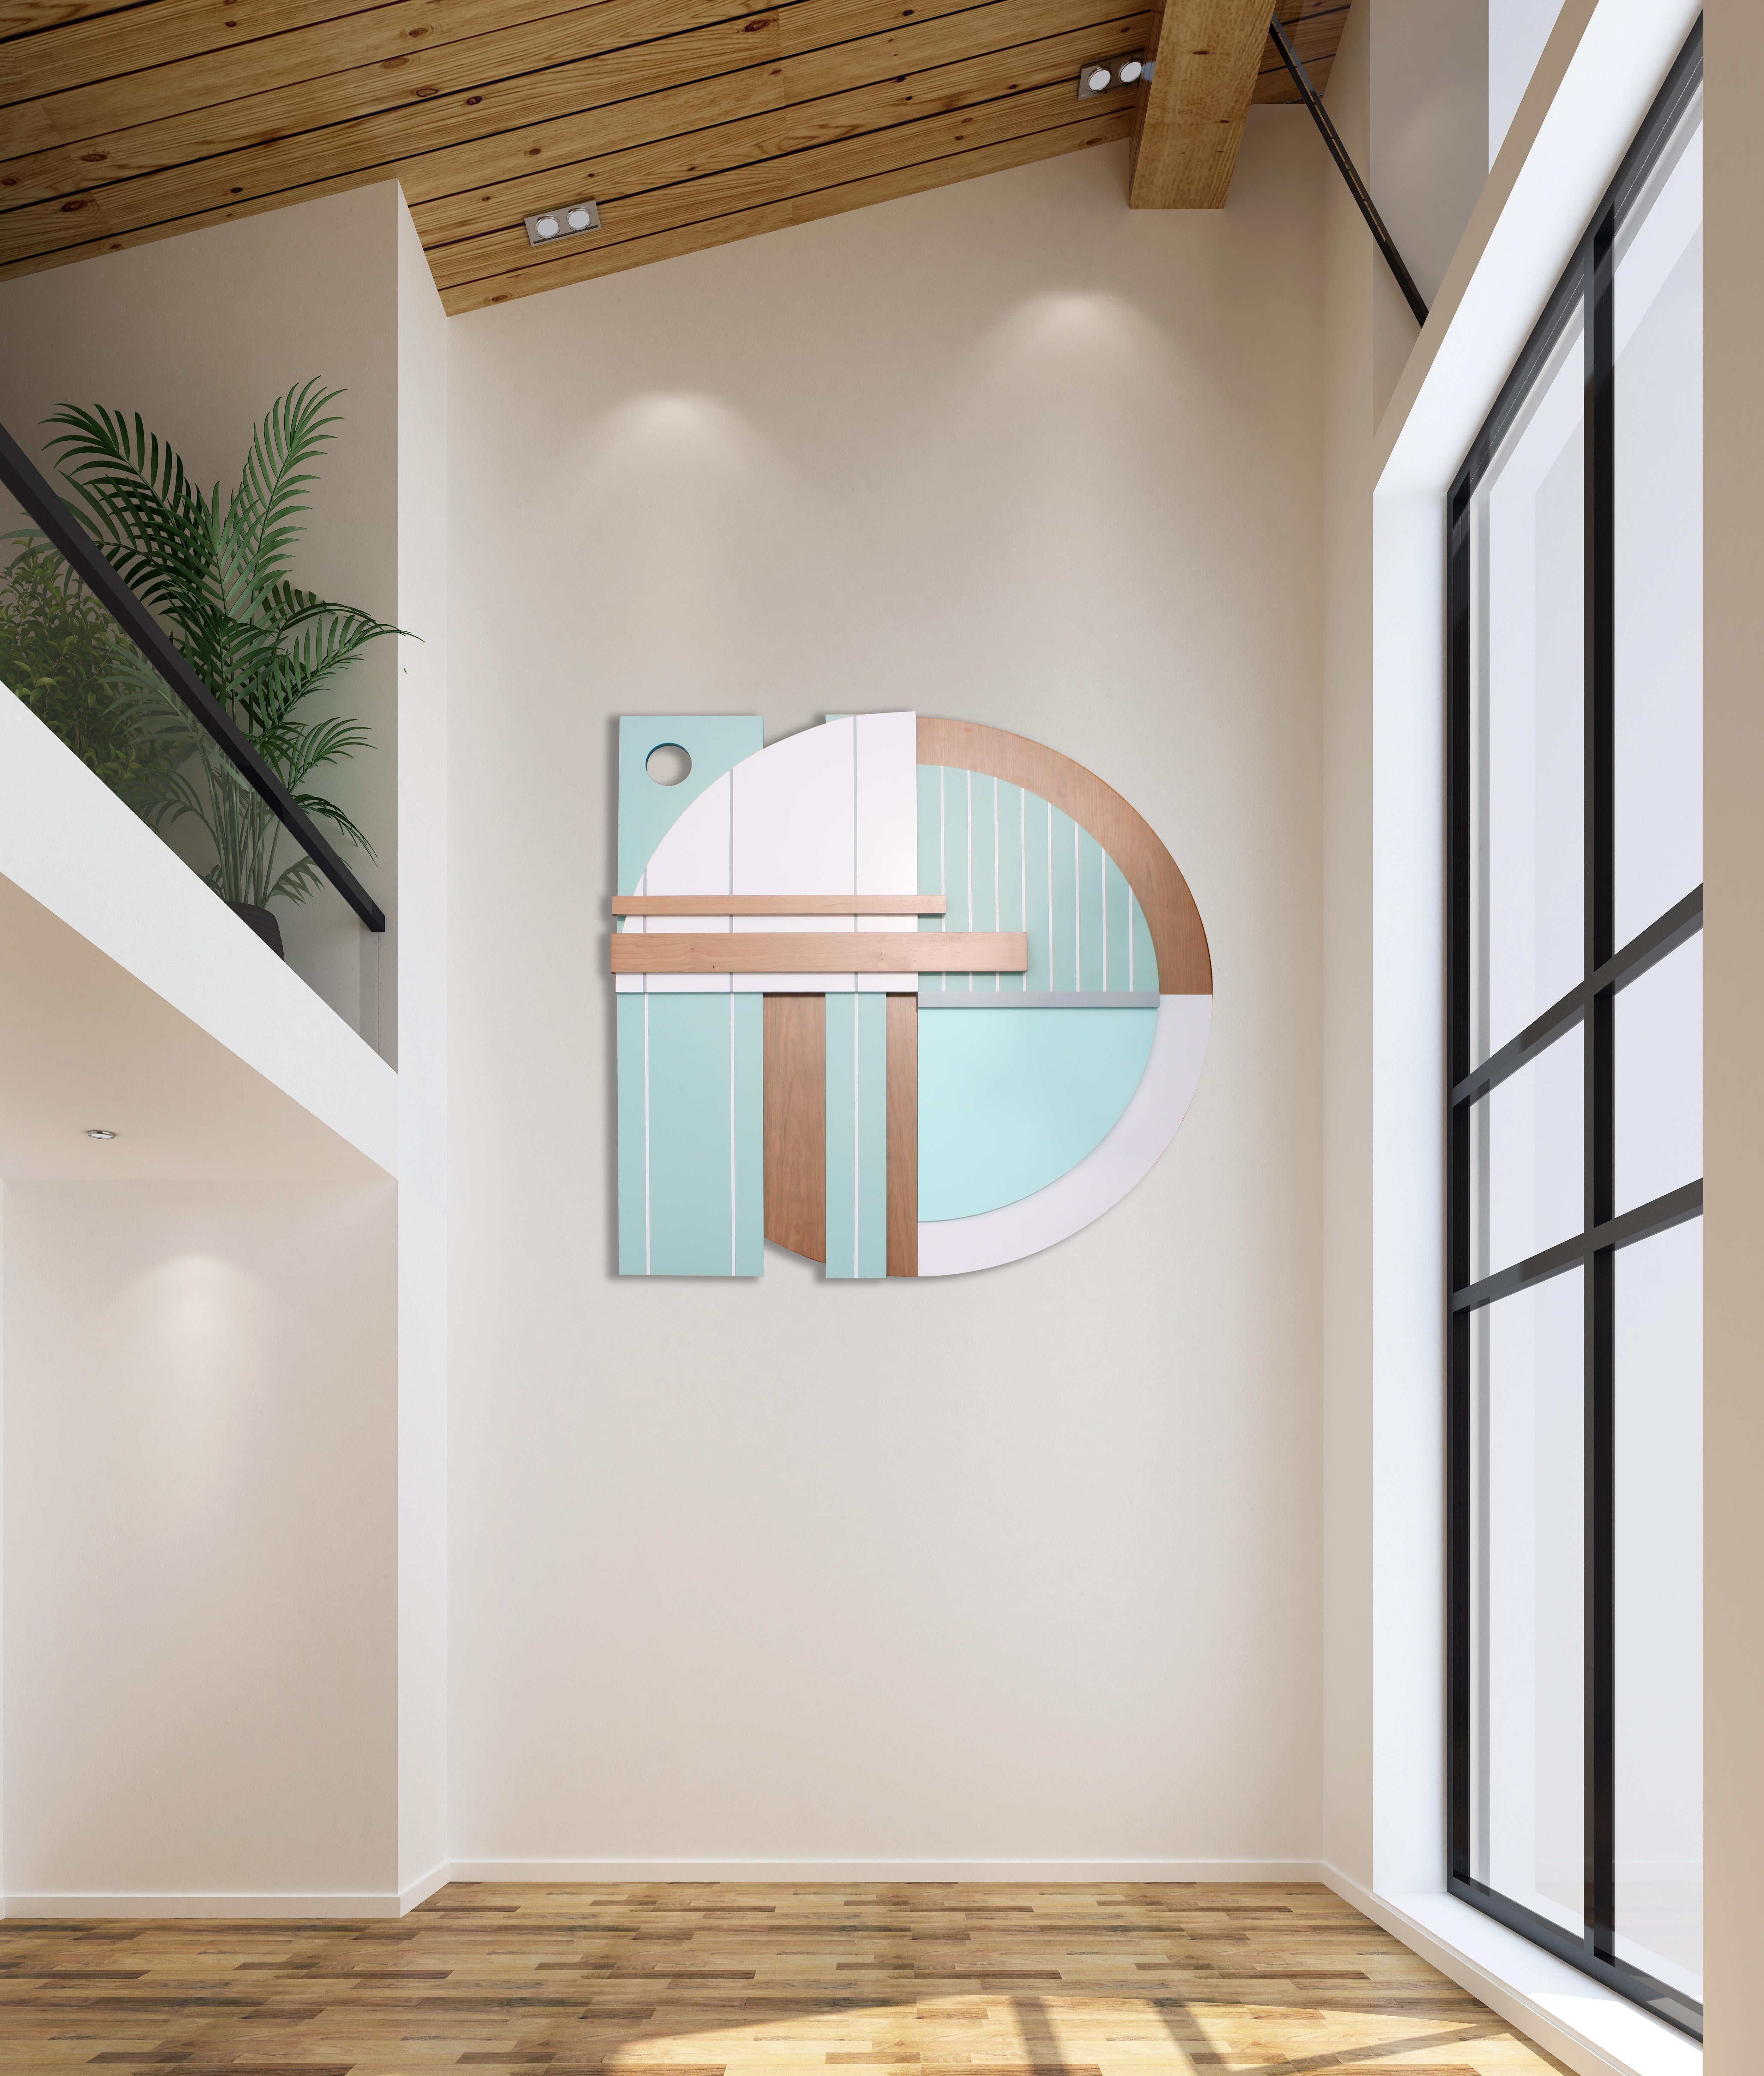 Bauhaus Mint est une élégante sculpture murale contemporaine minimaliste. Il est construit avec des panneaux de bouleau, et une laque pigmentée haut de gamme avec une finition satinée. La pièce s'appuie sur une palette de couleurs minimaliste,